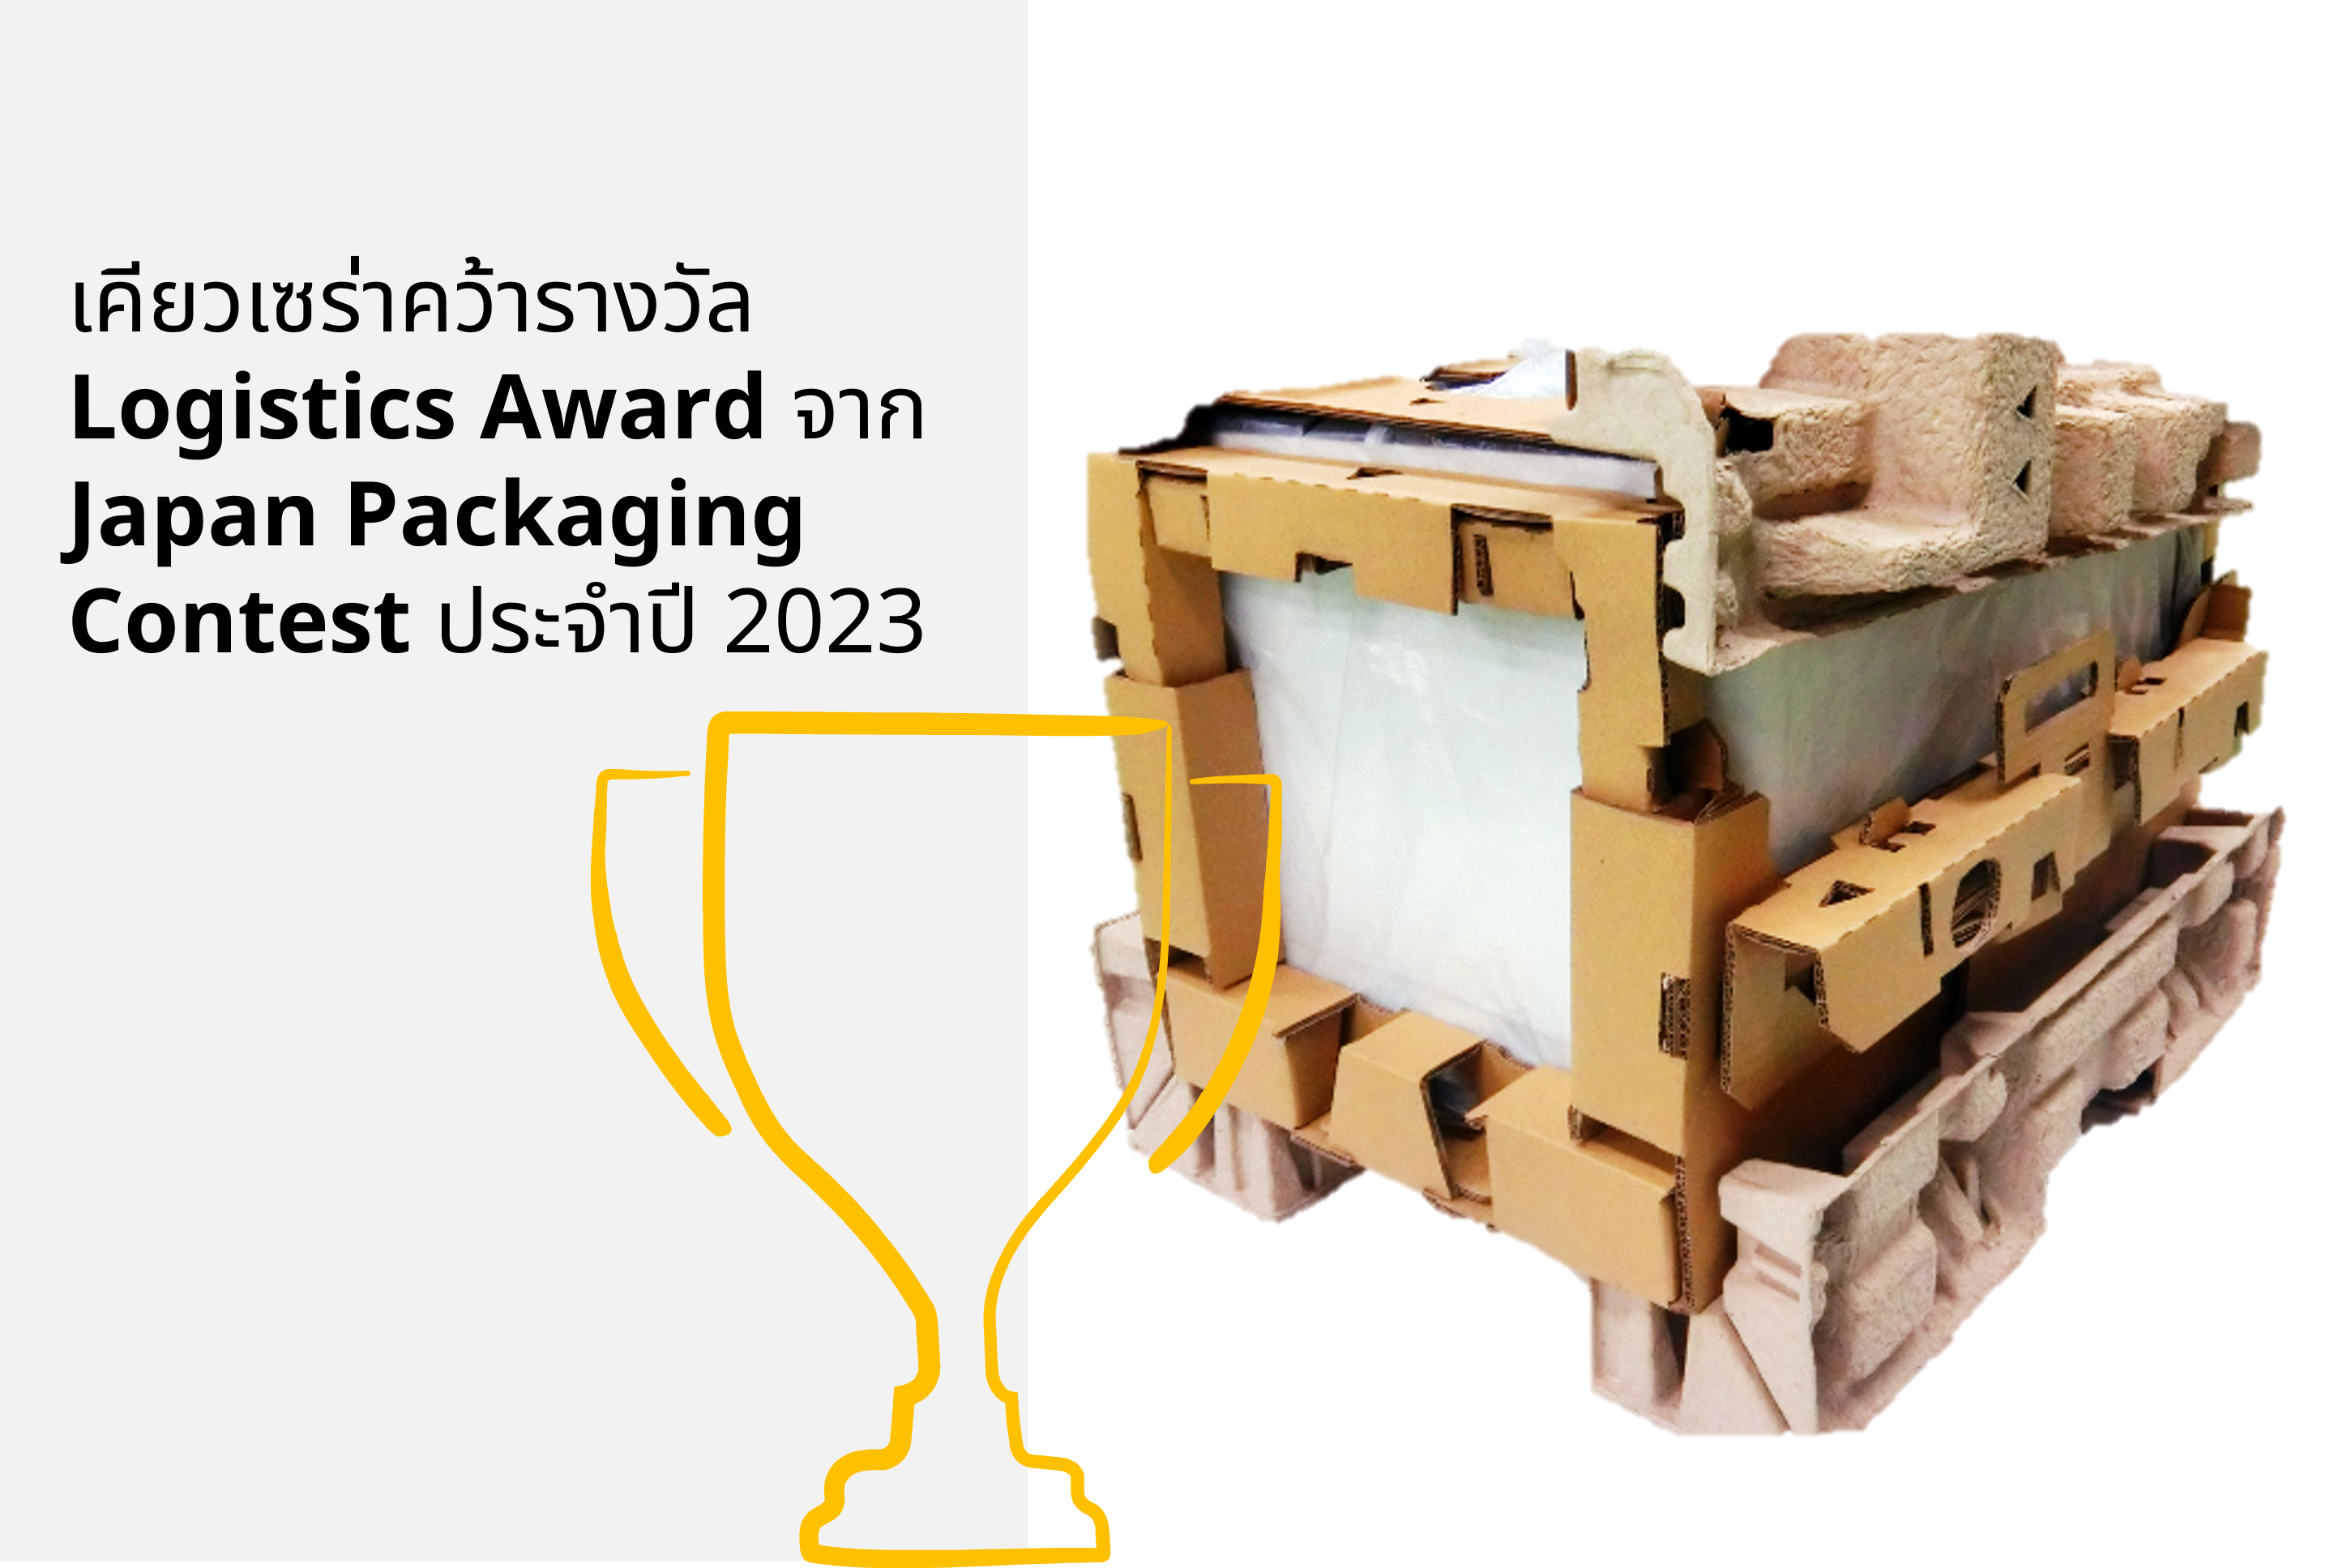 >เคียวเซร่าคว้ารางวัล Logistics Award จาก Japan Packaging Contest ประจำปี 2023